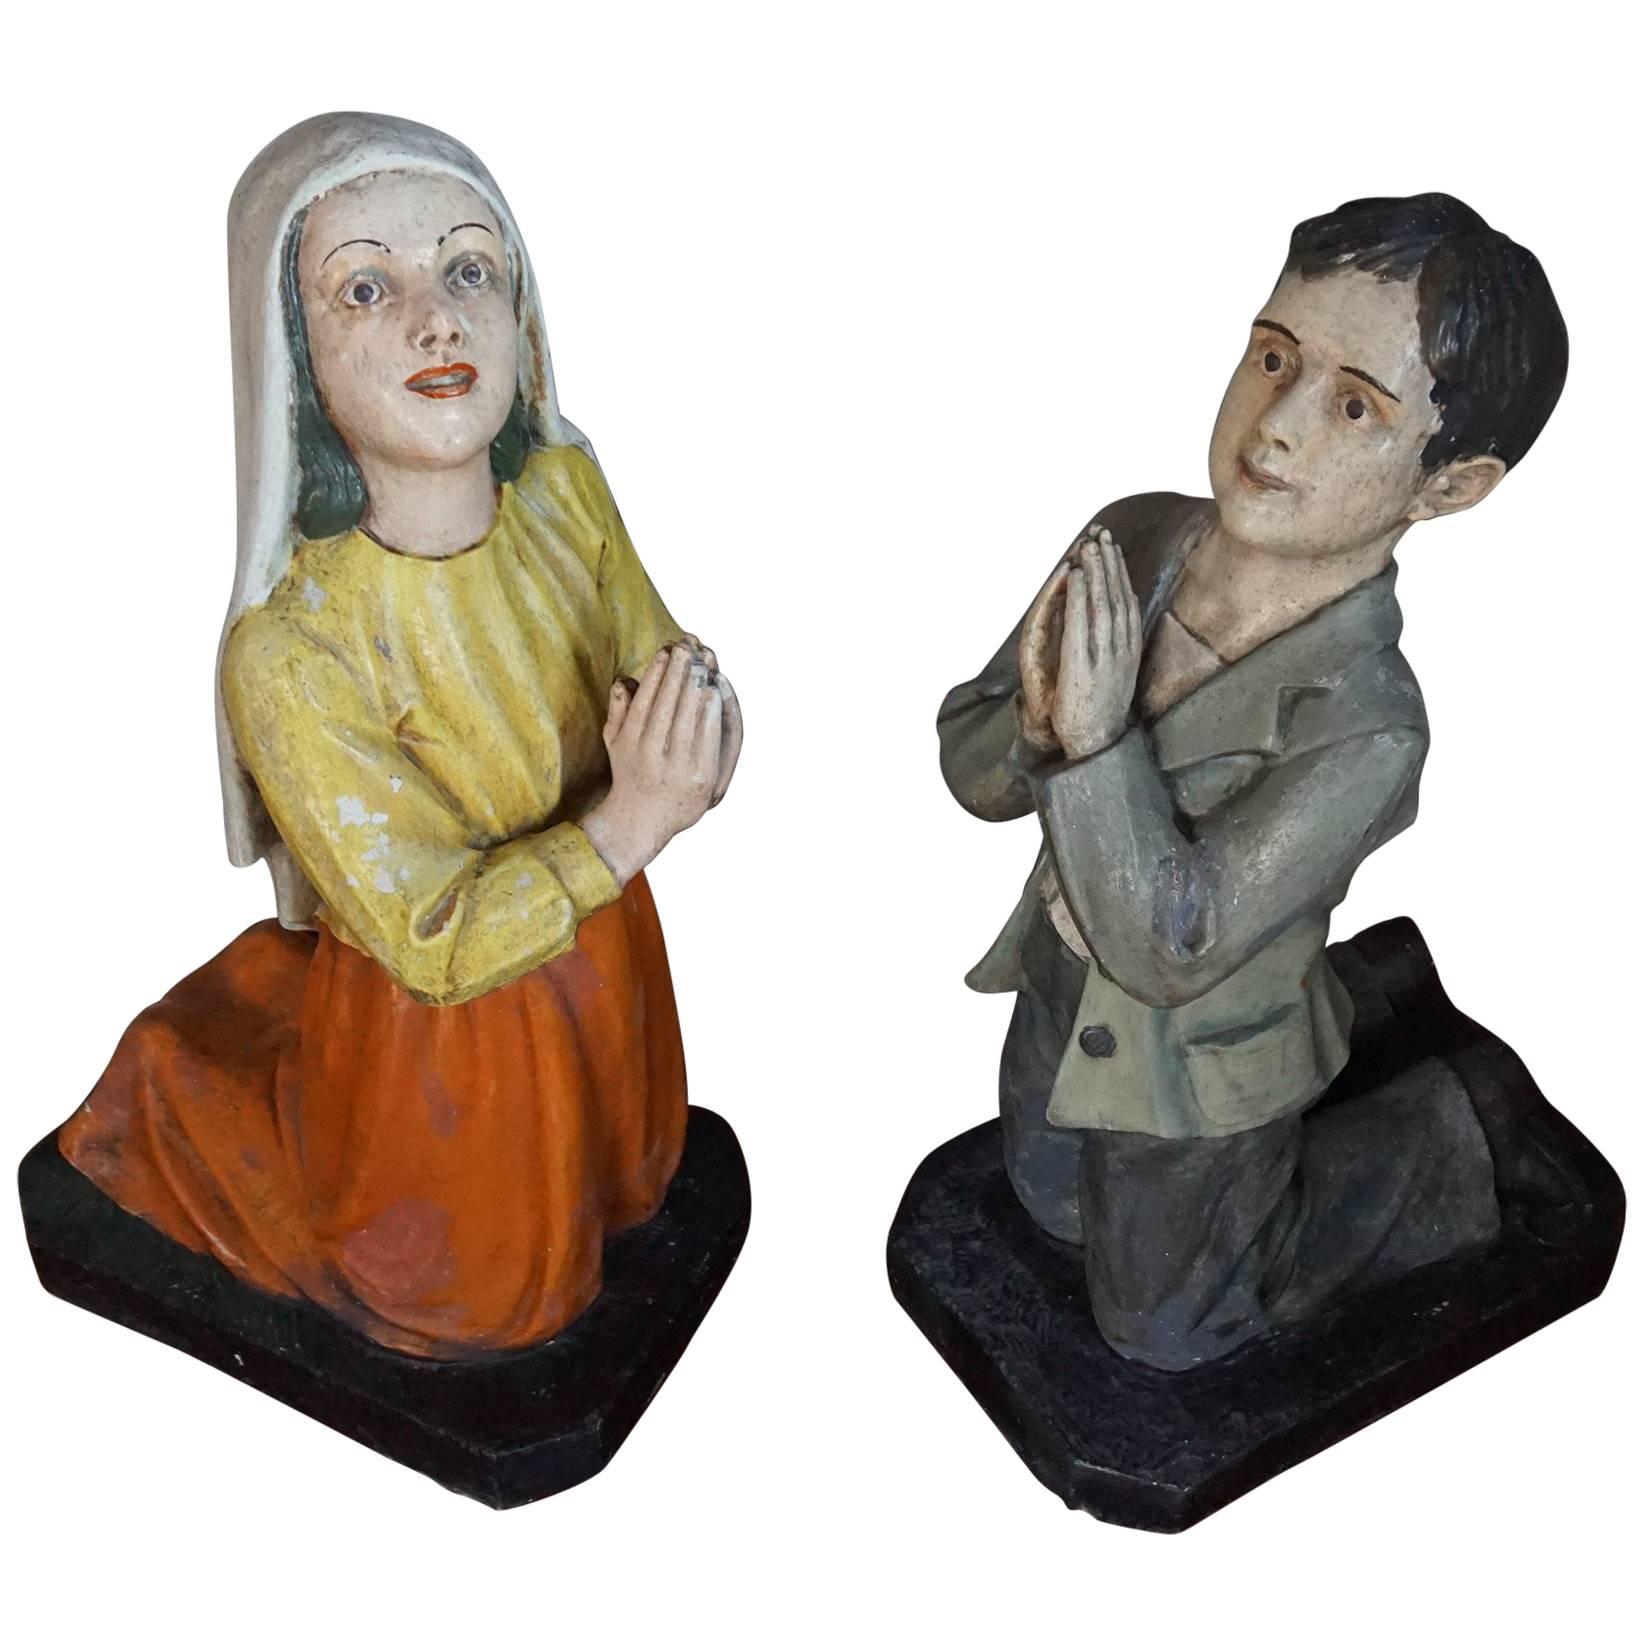 Devotional Statues / Religious Sculptures of St. Francisco de Jesus Marto & More For Sale